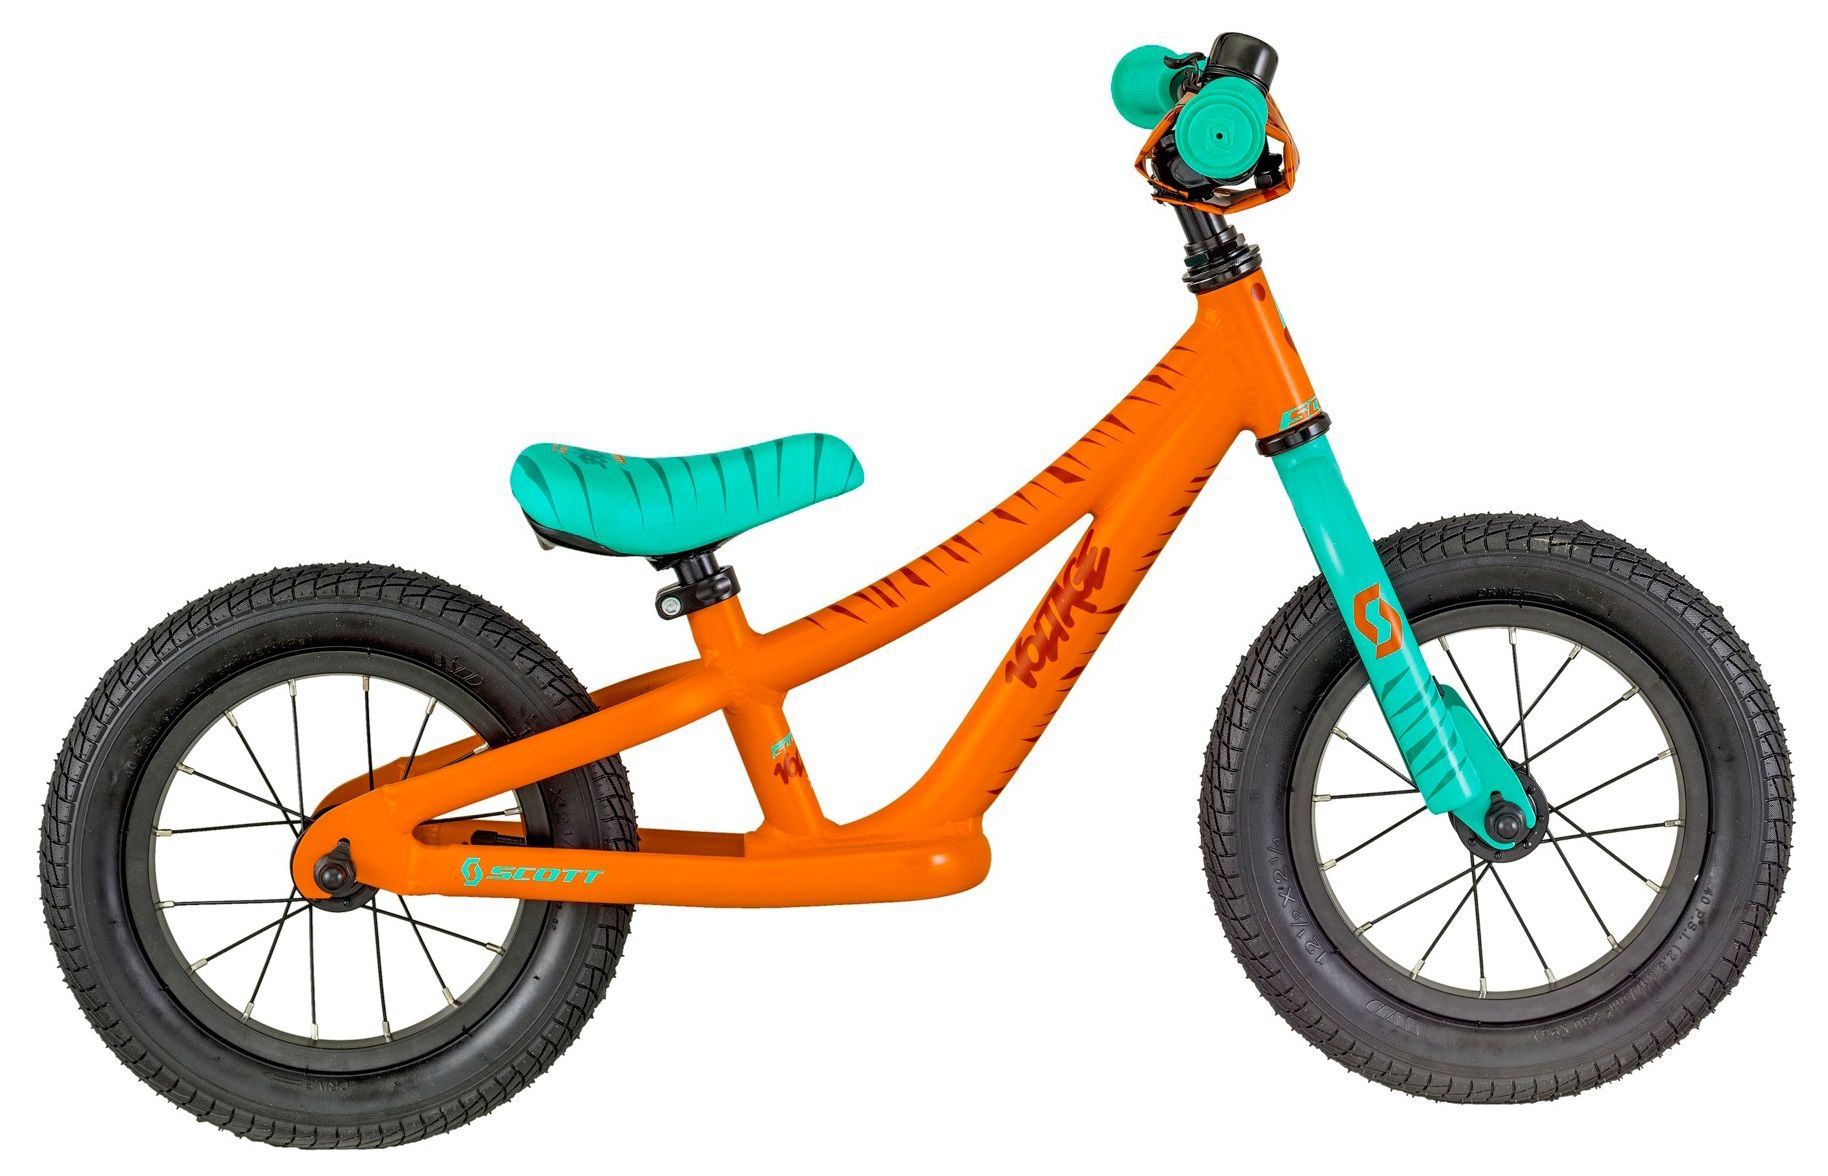  Отзывы о Детском велосипеде Scott Voltage Walker 2018